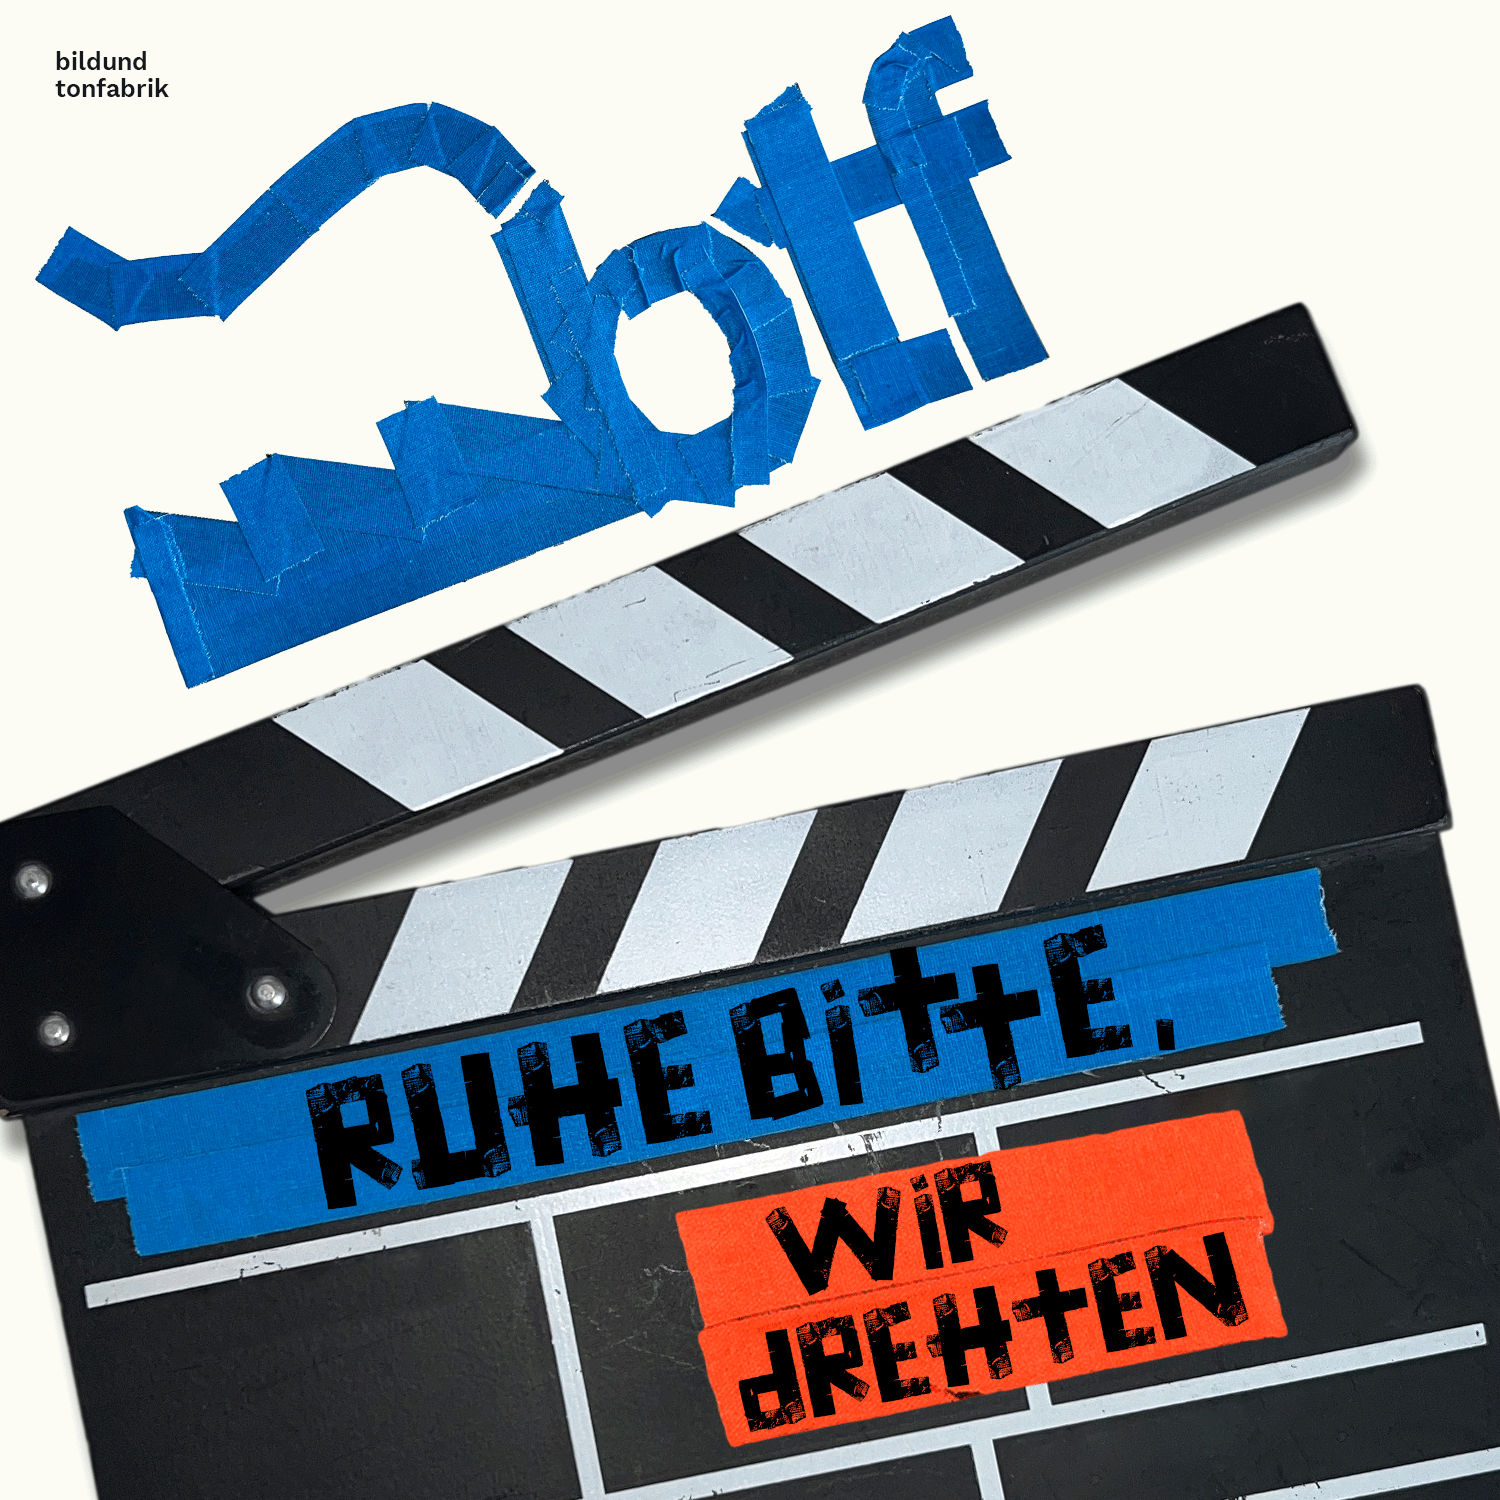 https://media.plus.rtl.de/podcast/ruhe-bitte-wir-drehten-281yt22nes6jk.png